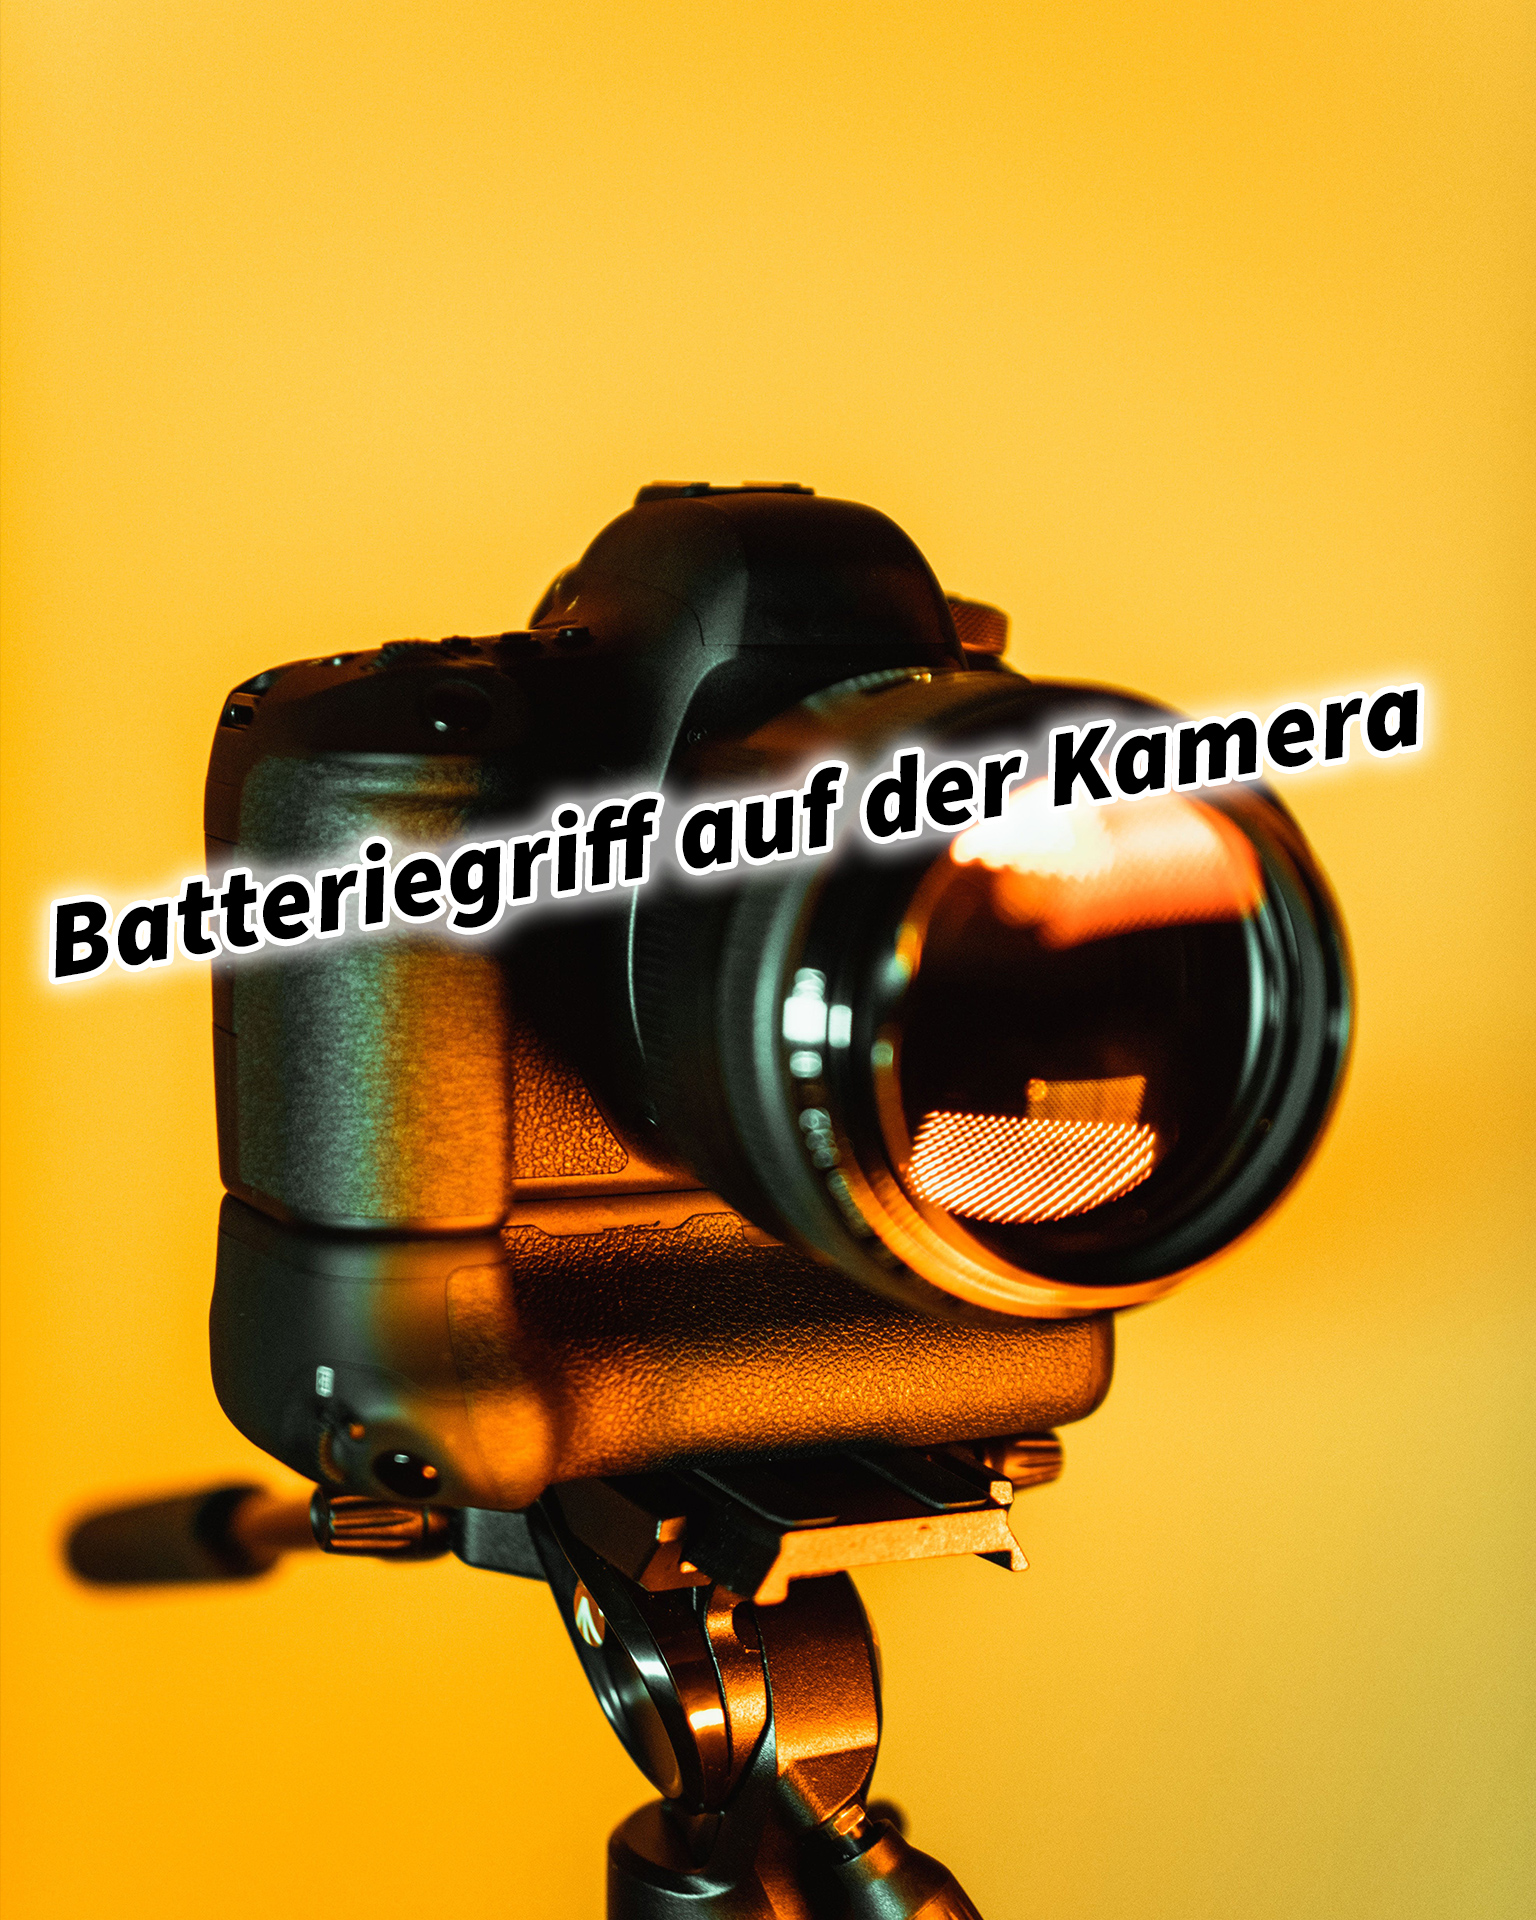 Batteriegriff auf der Kamera Vorteile / Nachteile